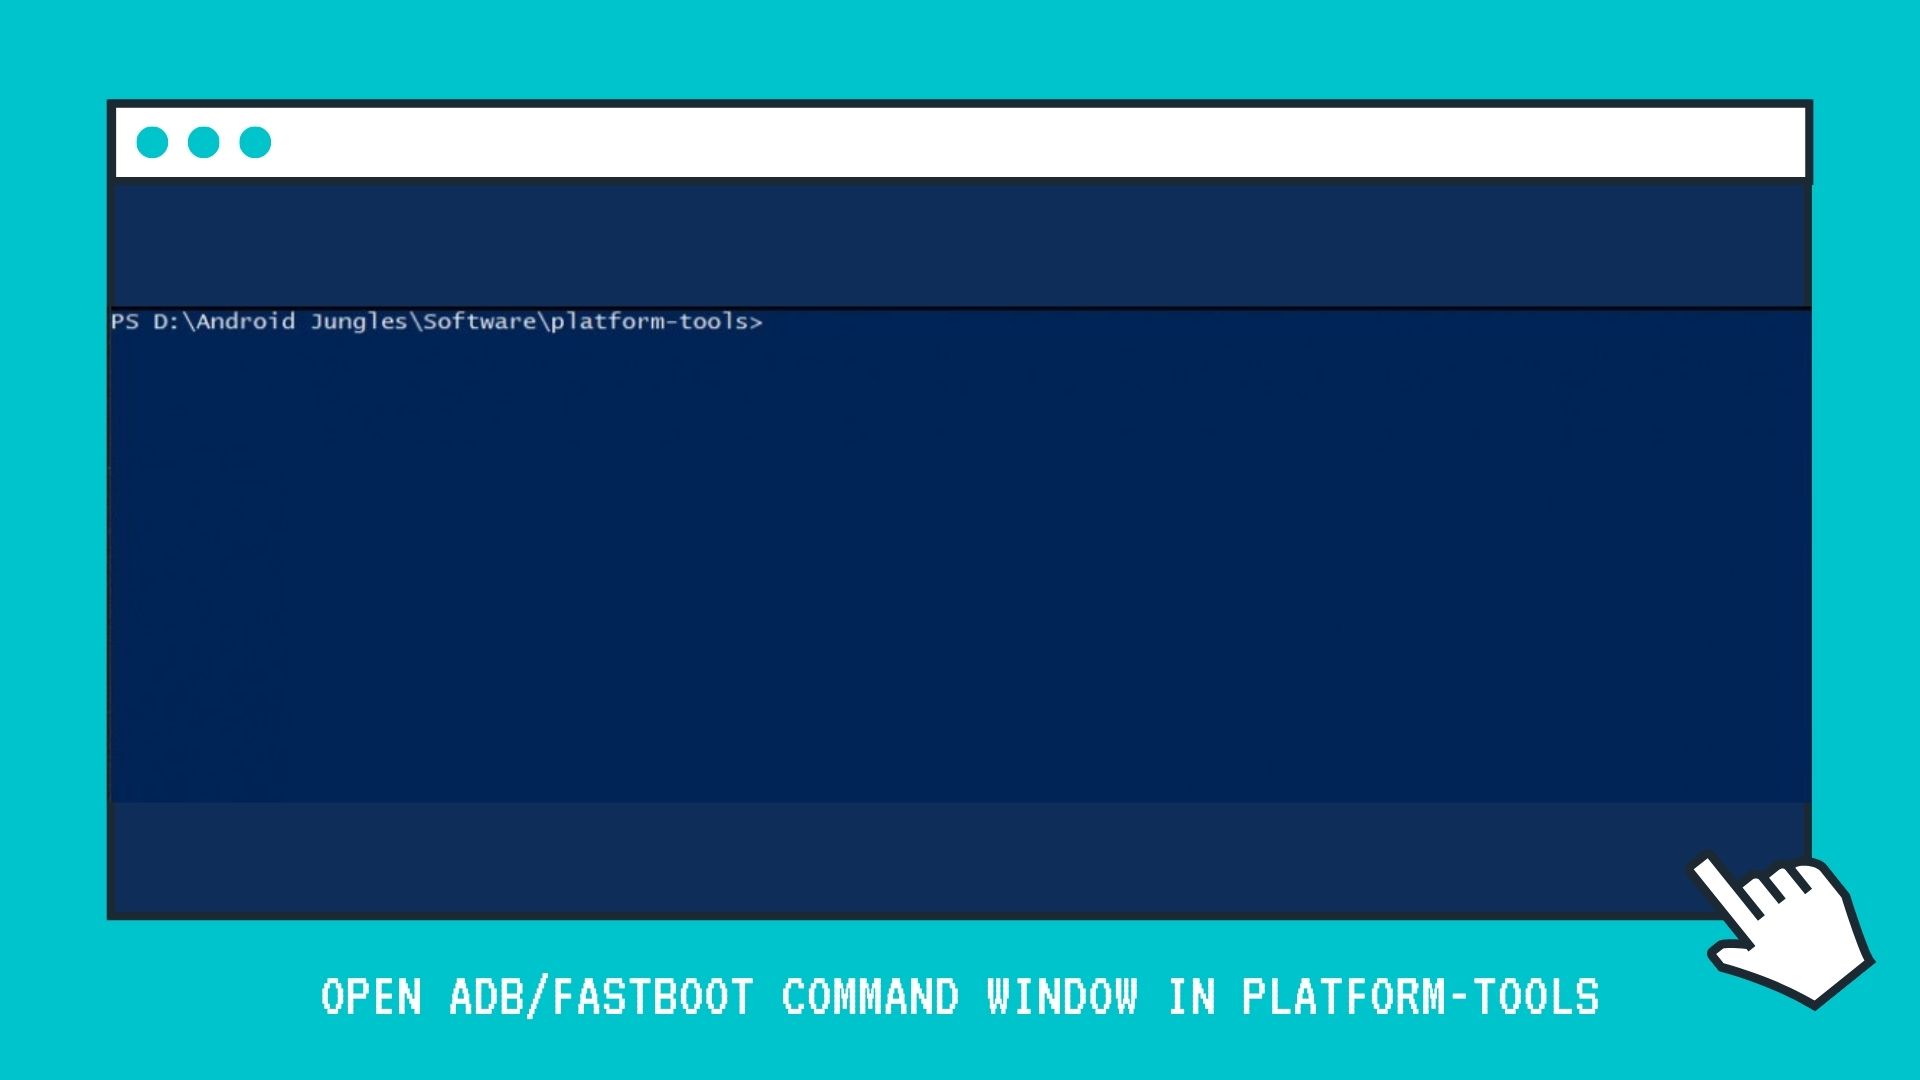 Open ADBFastboot Command Window in Platform-Tools